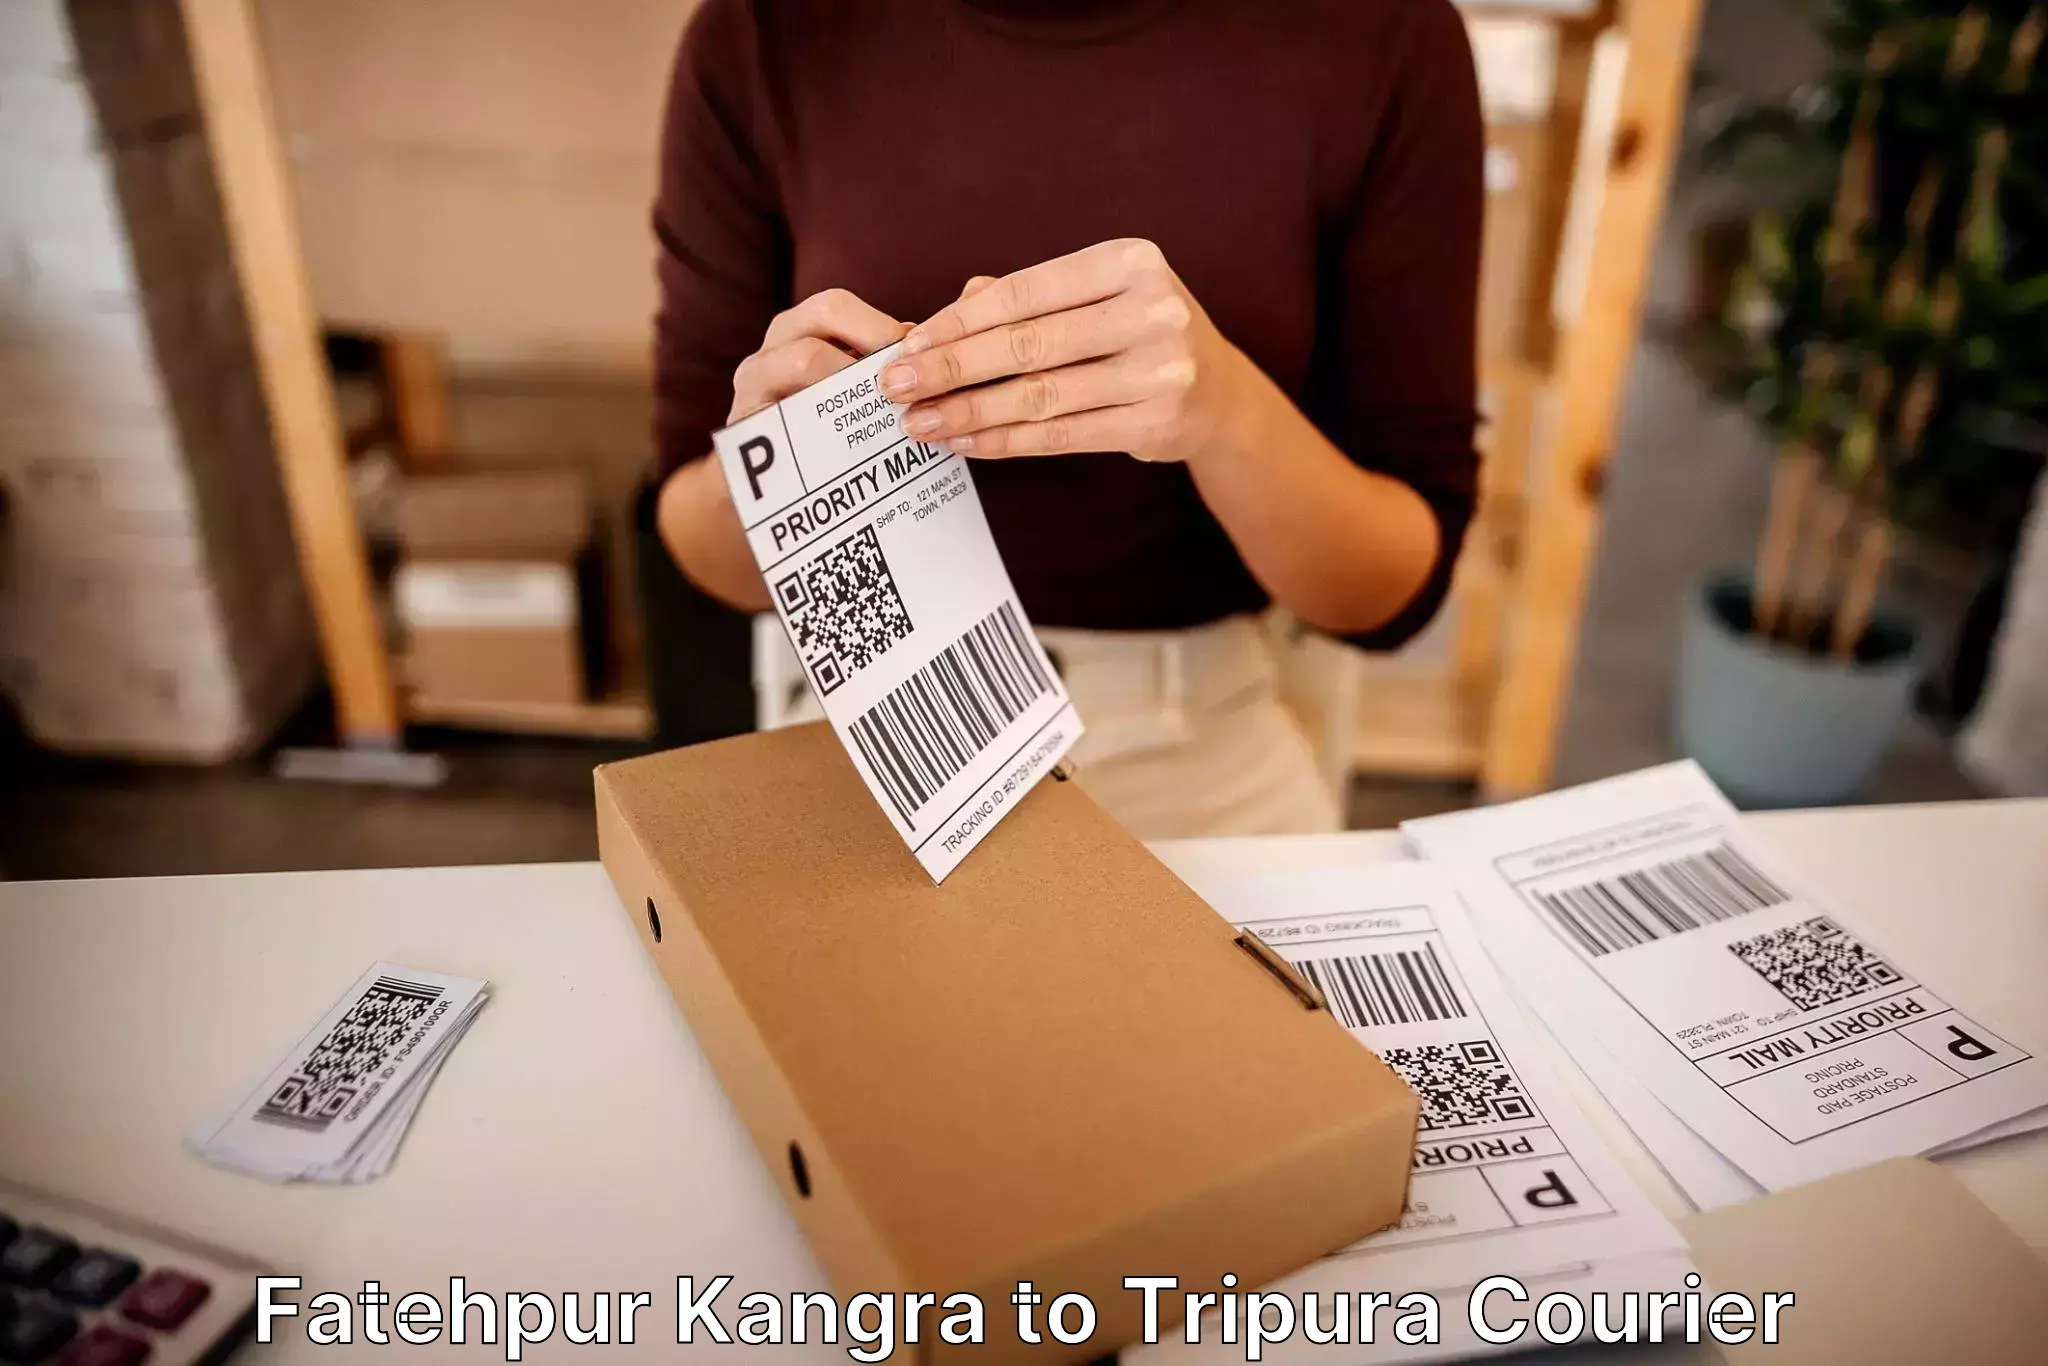 Furniture moving experts Fatehpur Kangra to Tripura